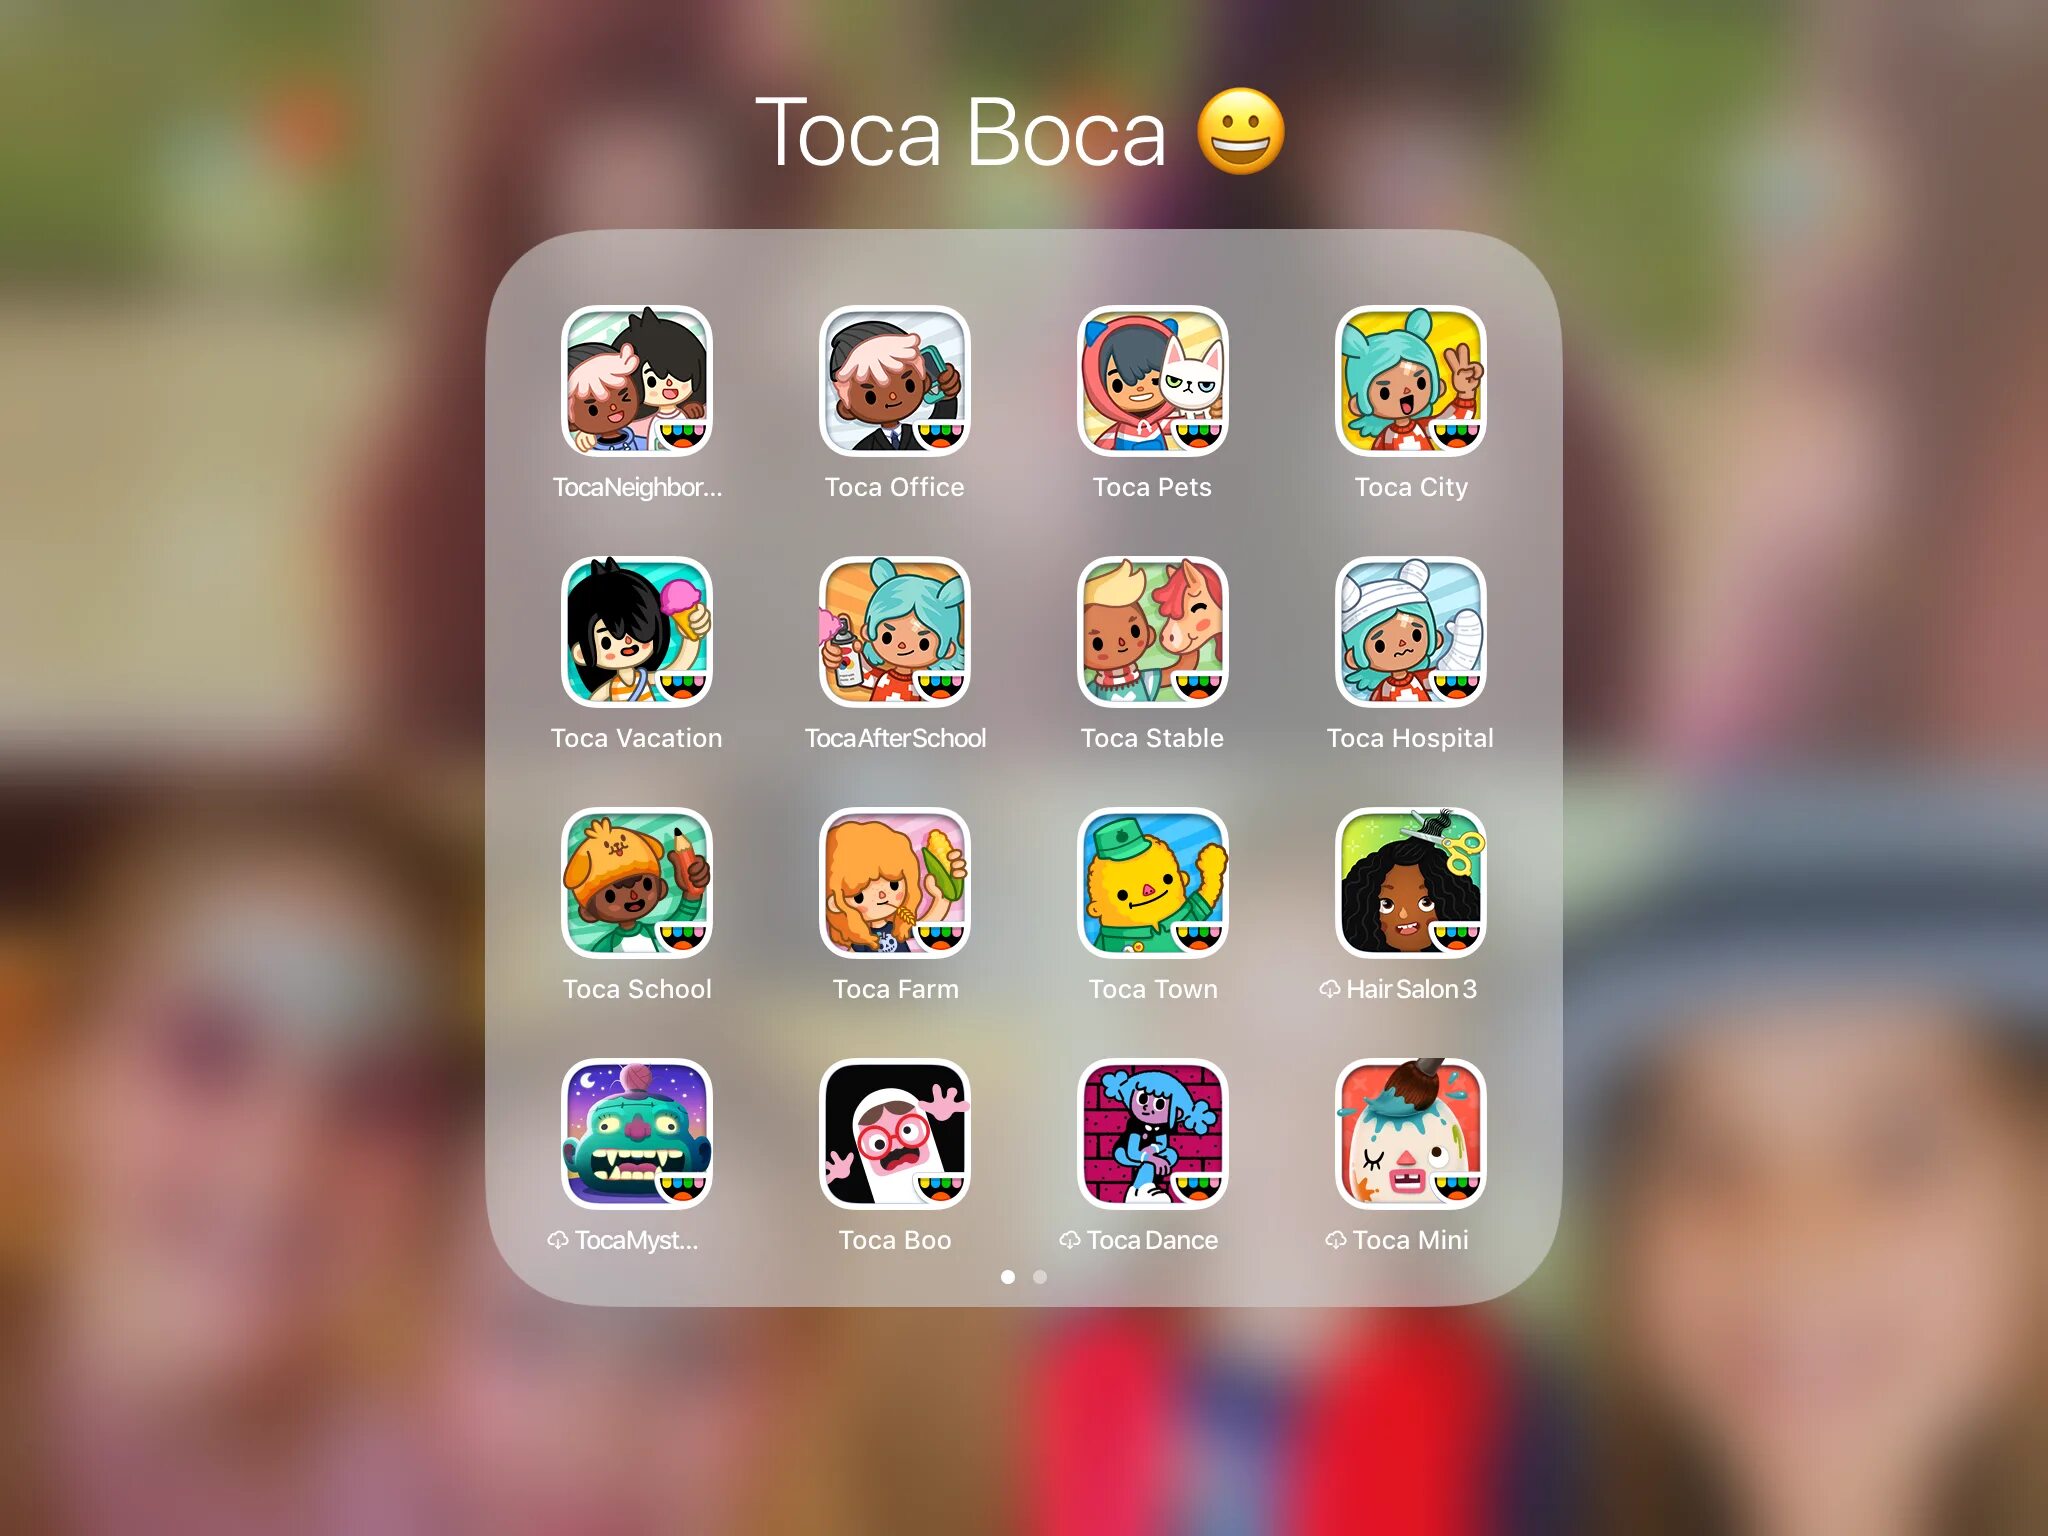 Какие игры есть на айфон. Тока бока. Игры toca boca. Идеи для персонажей в тока бока. Приложение с играми для айфона.